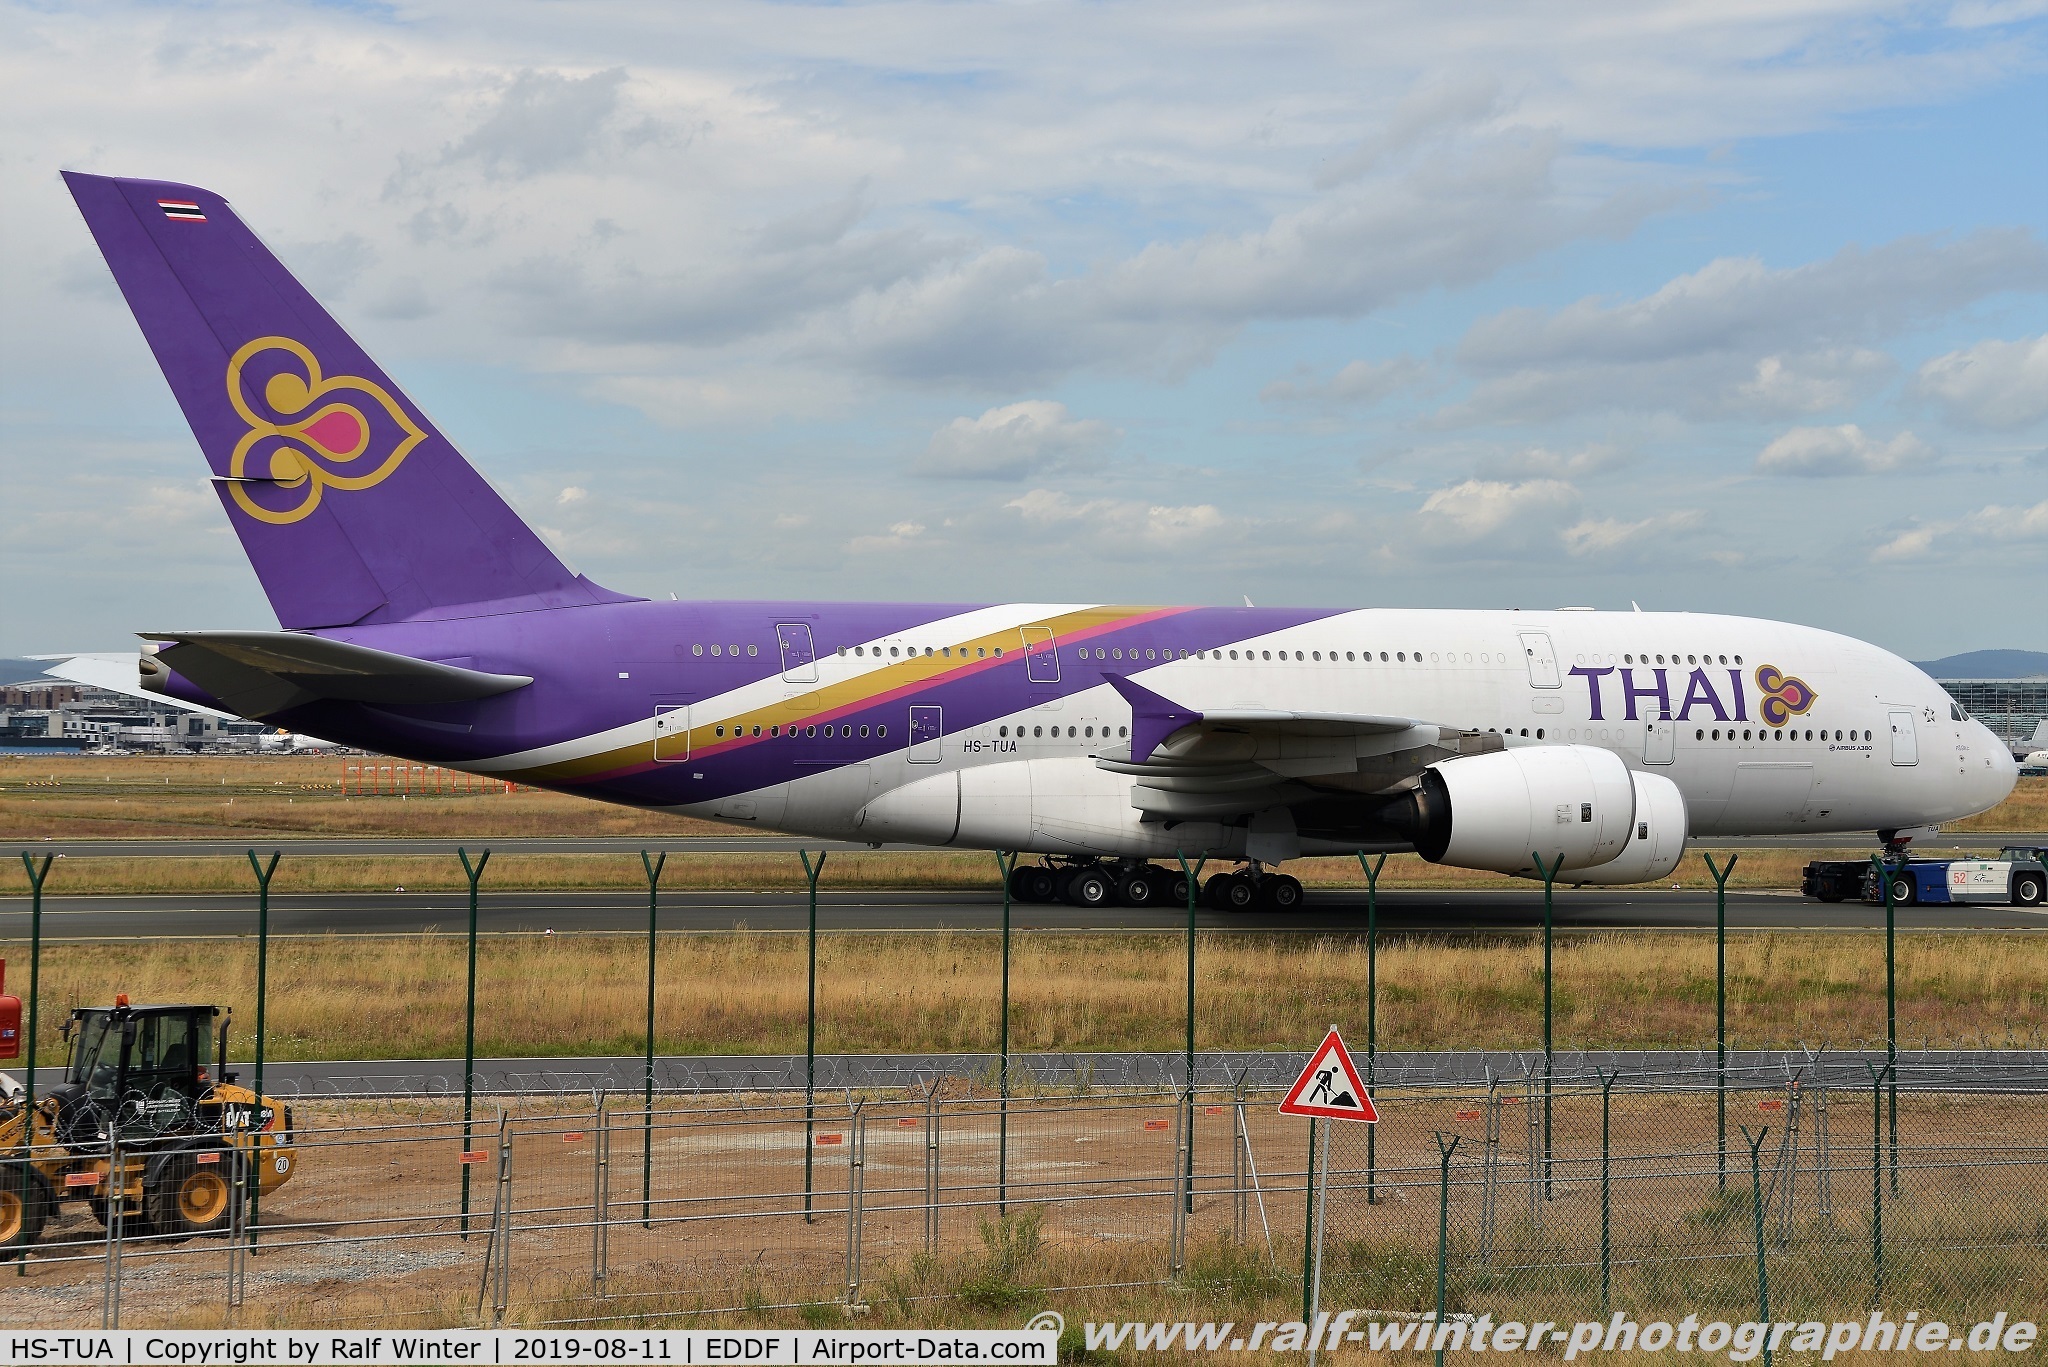 HS-TUA, 2012 Airbus A380-841 C/N 087, Airbus A380-841 - TG THA Thai Airways International 'Si Rattana' - 87 - HS-TUA - 11.08.2019 - FRA